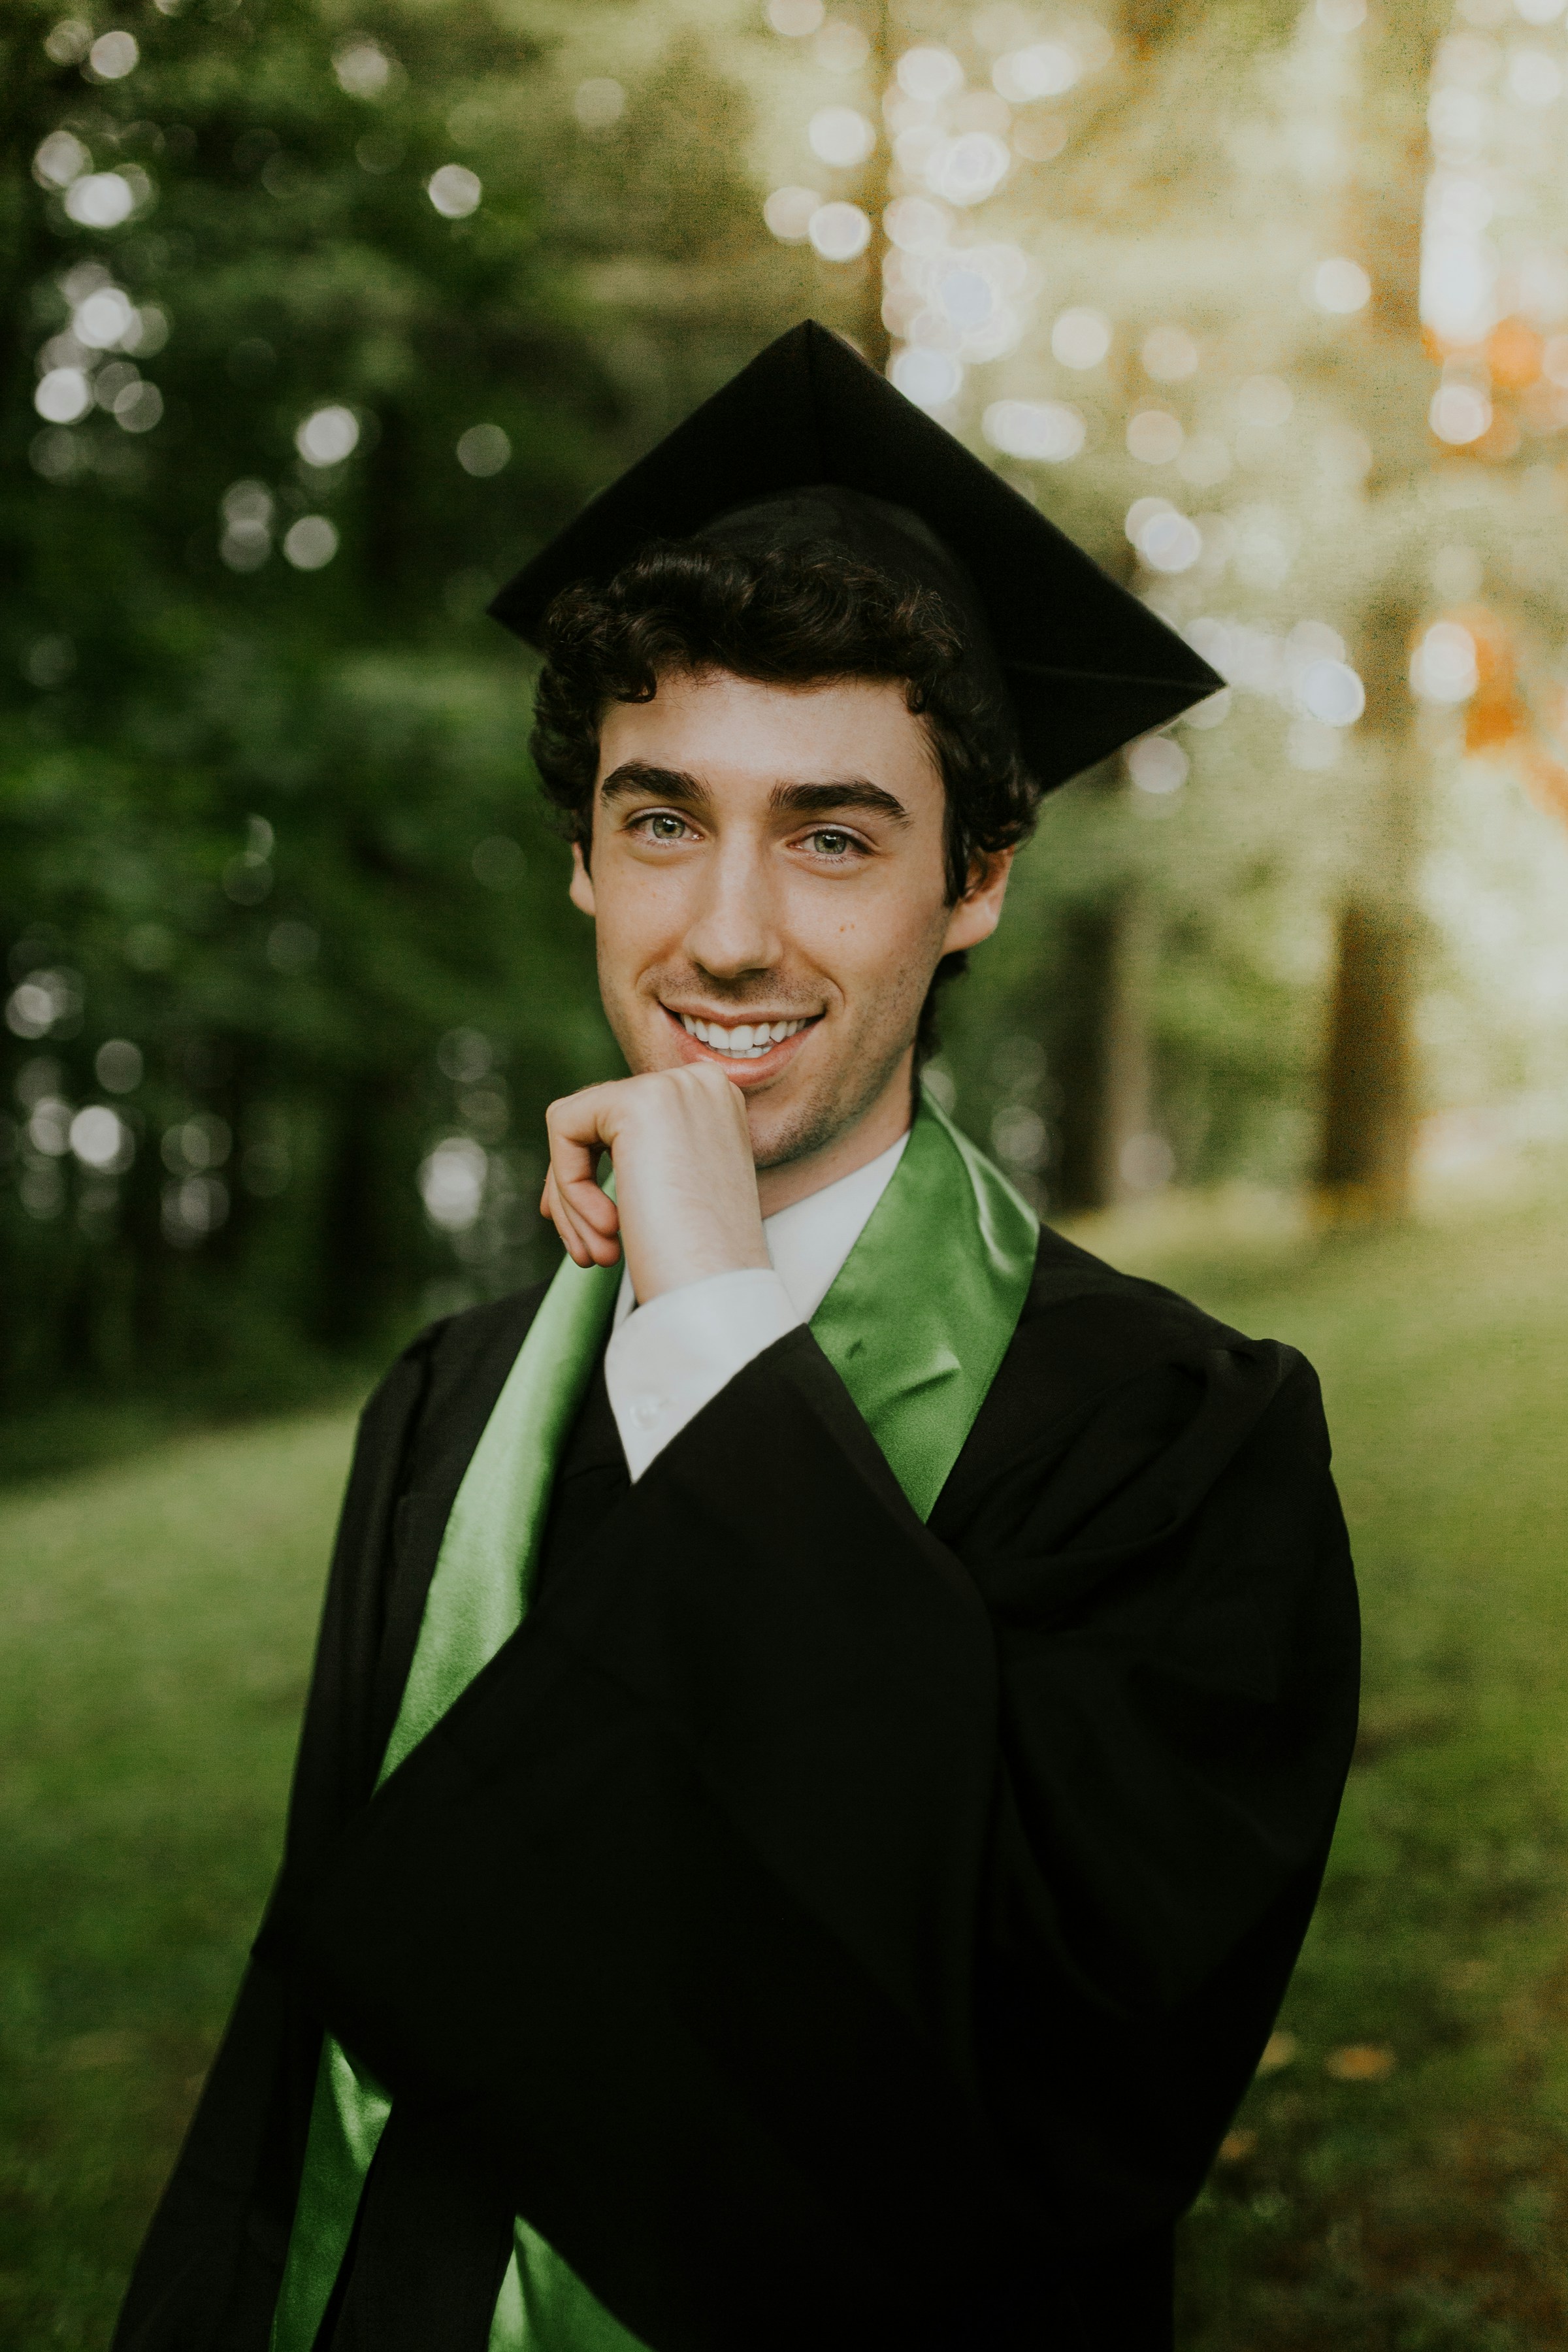 Un jeune homme souriant portant une robe de fin d'études | Source : Unsplash